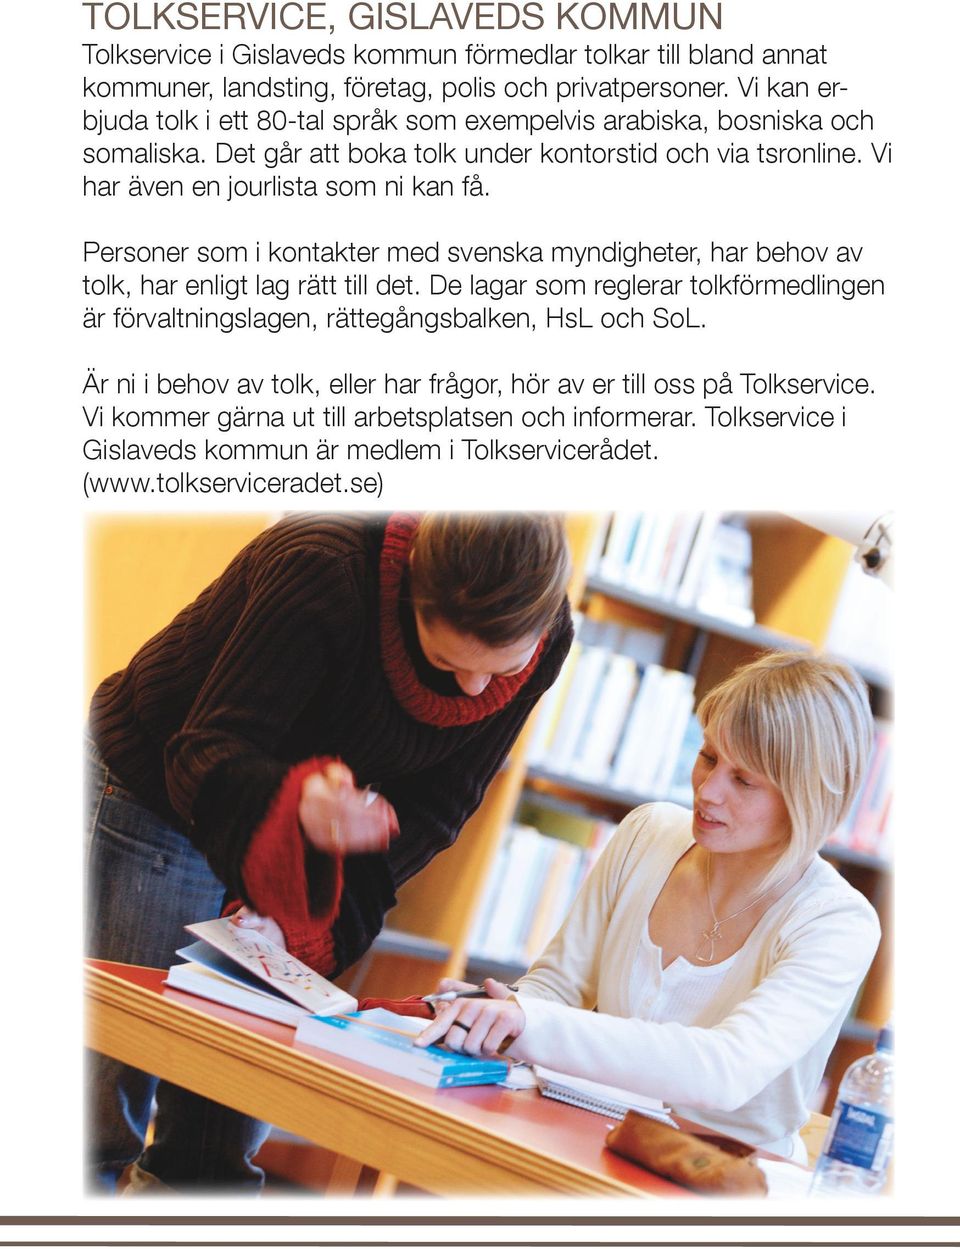 Personer som i kontakter med svenska myndigheter, har behov av tolk, har enligt lag rätt till det.